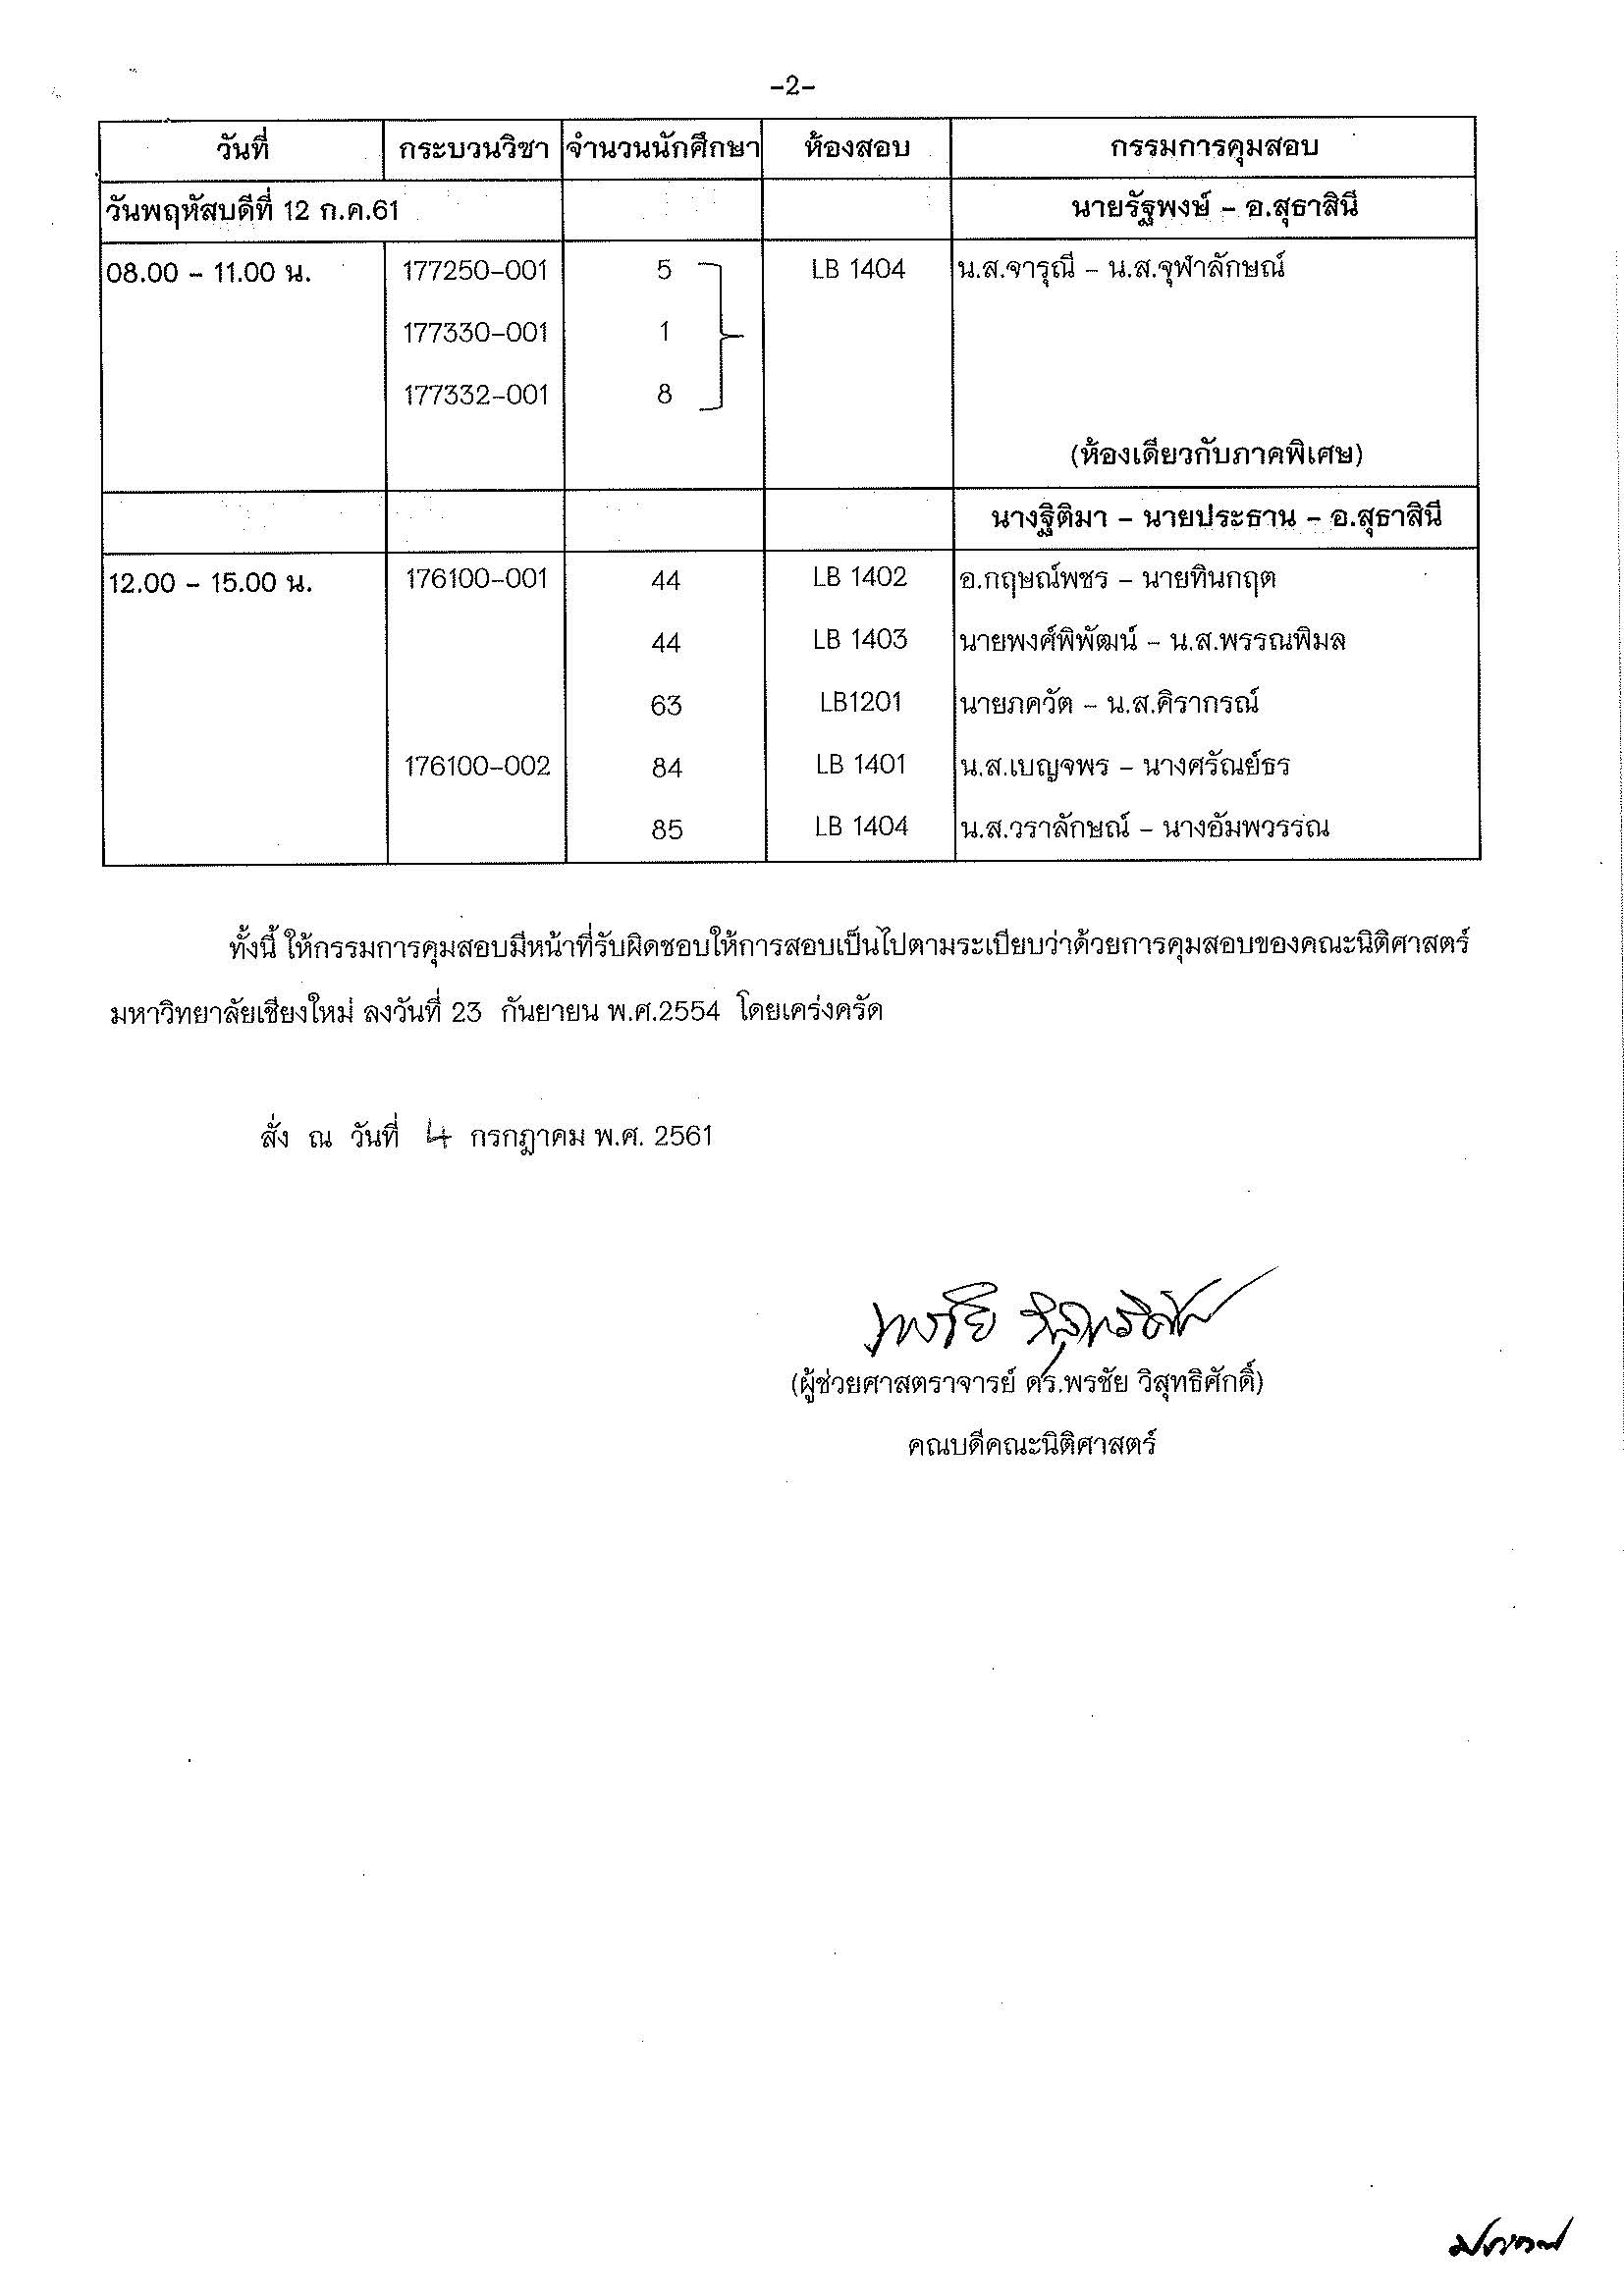 ประกาศตารางสอบปลายภาค  ภาคเรียนฤดูร้อน ปีการศึกษา 2560